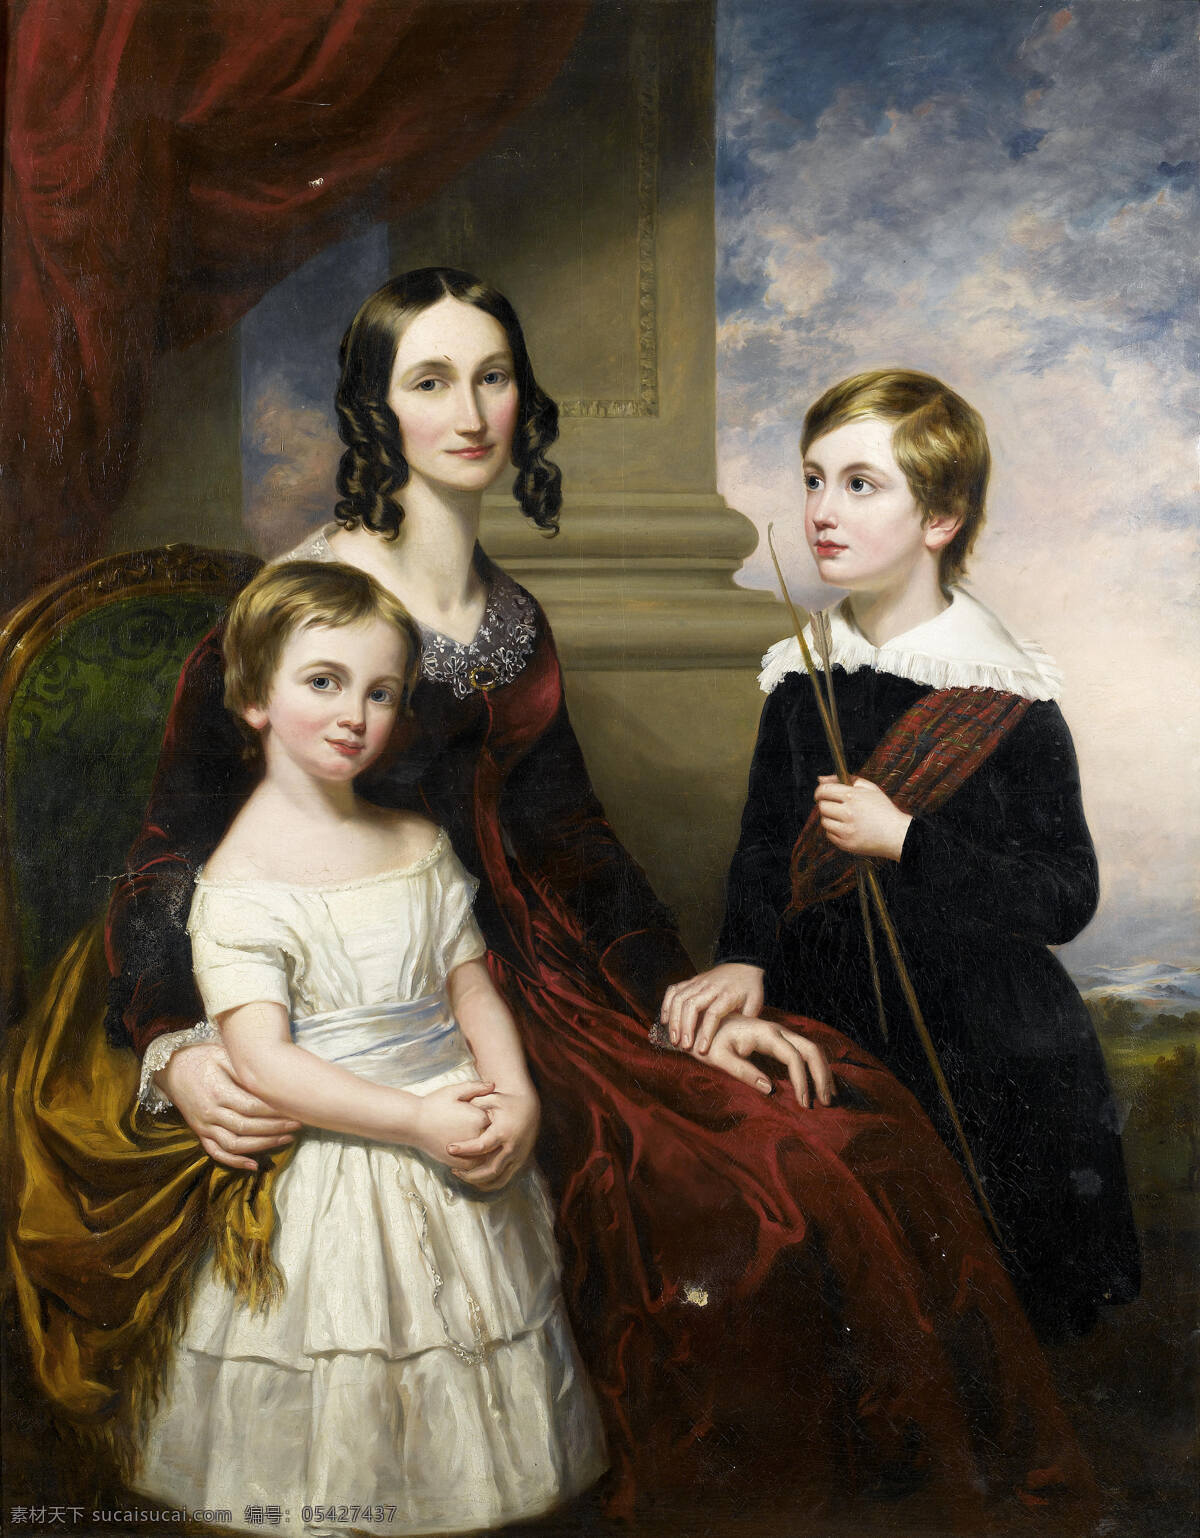 绘画书法 母亲 文化艺术 油画 母子 三 人 设计素材 模板下载 母子三人 女儿 儿子 红色帘子 贵族之家 19世纪油画